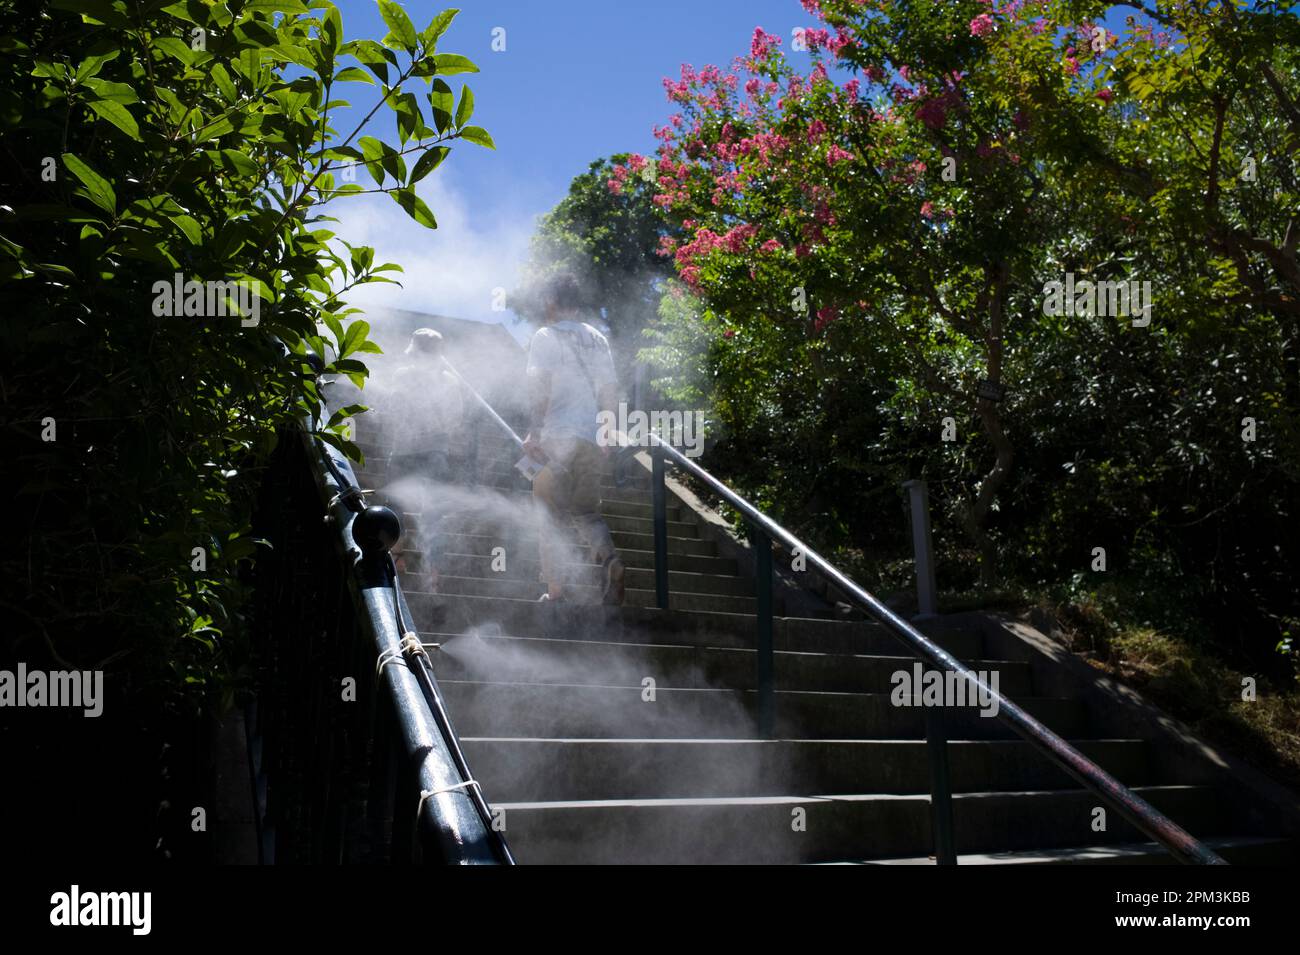 Un sistema di nebulizzazione dell'acqua assicura che le piante siano innaffiate e fornisce ai visitatori un gradito raffreddamento, i giardini di Nagasaki, Giappone. Foto Stock